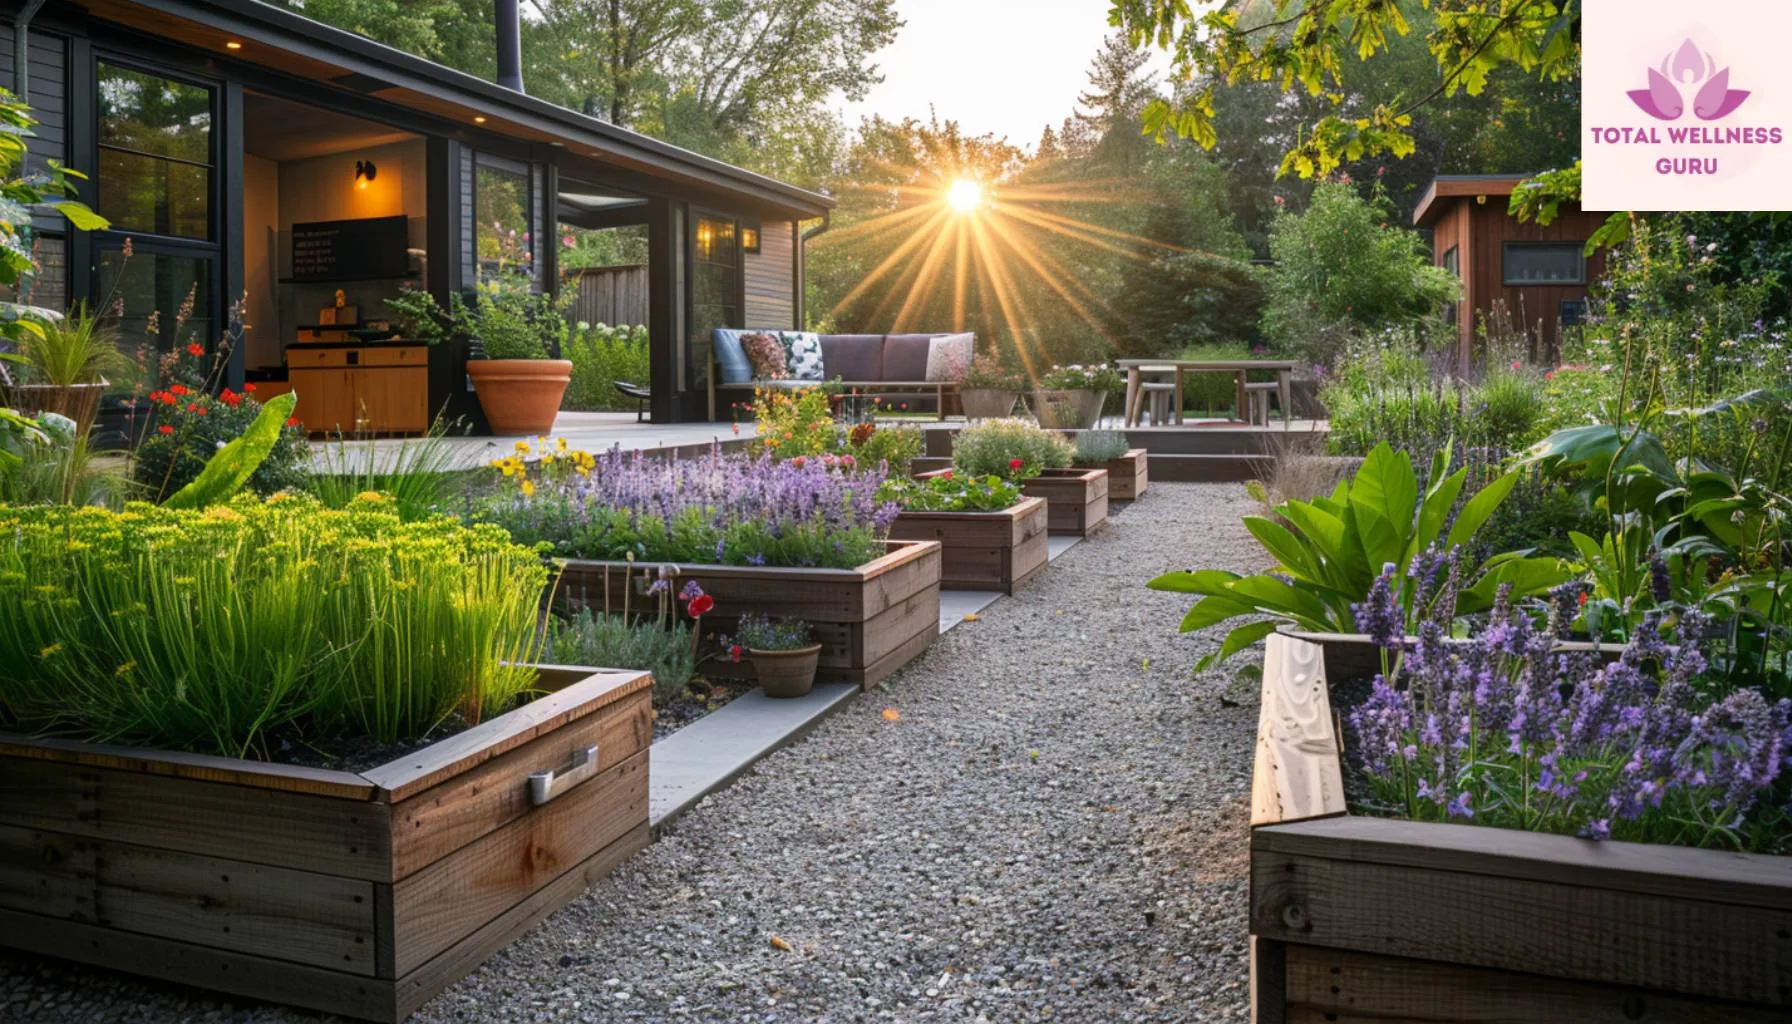 Transform Your Garden into a Natural Healing Center with Medicinal Herbs